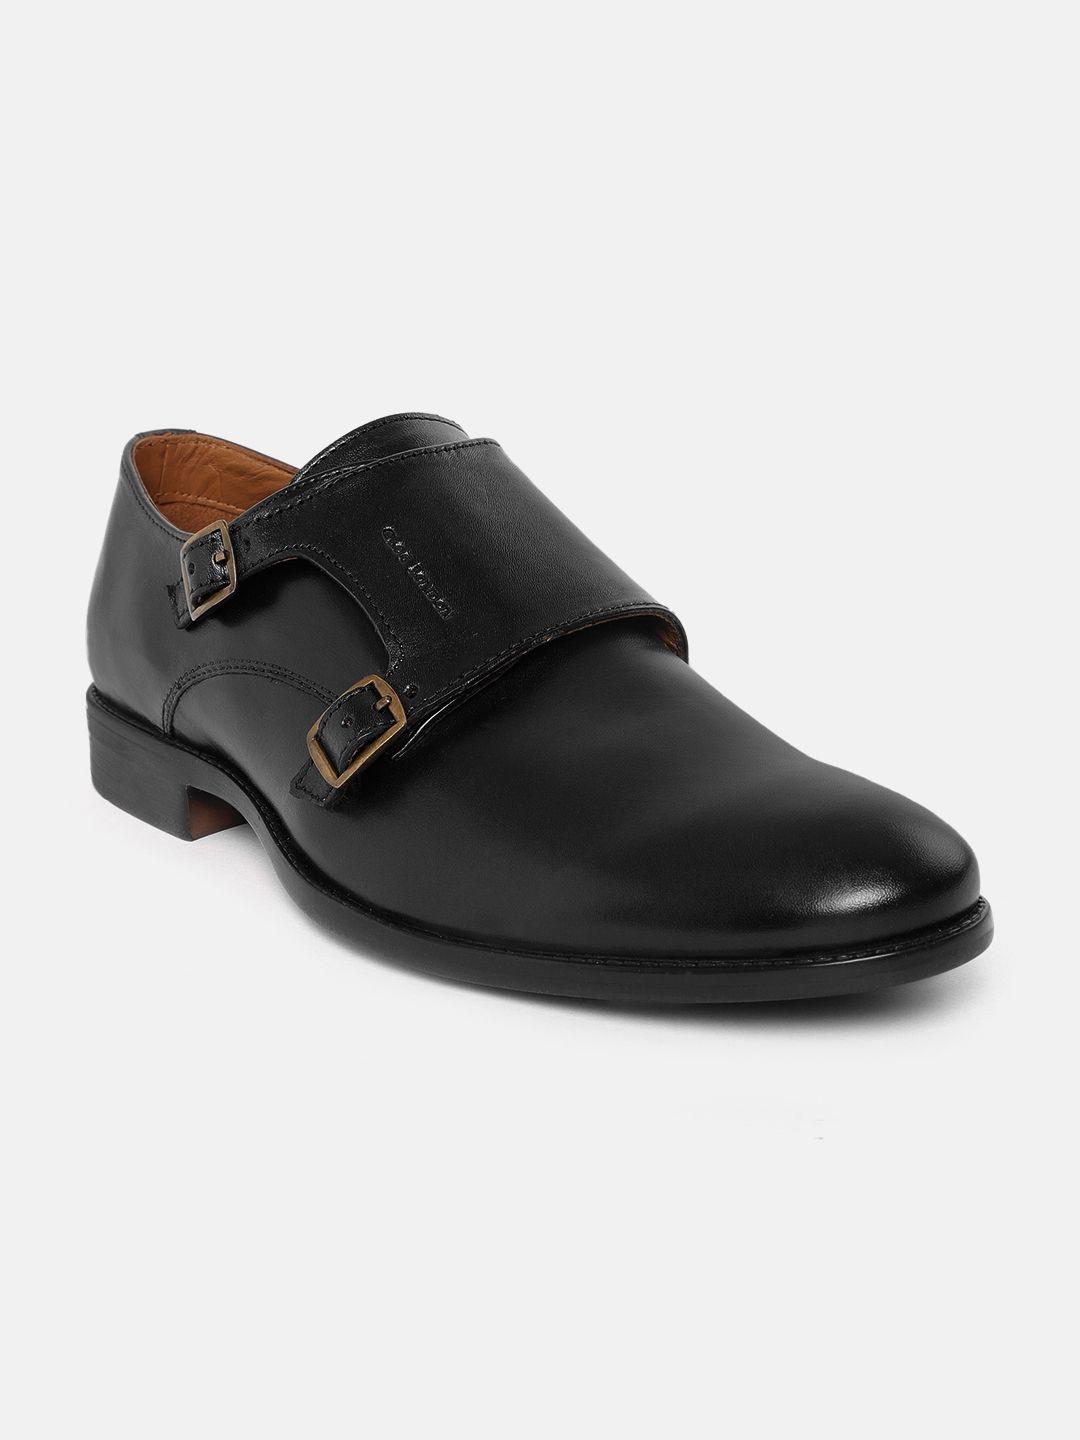 clog london men black leather monk shoes